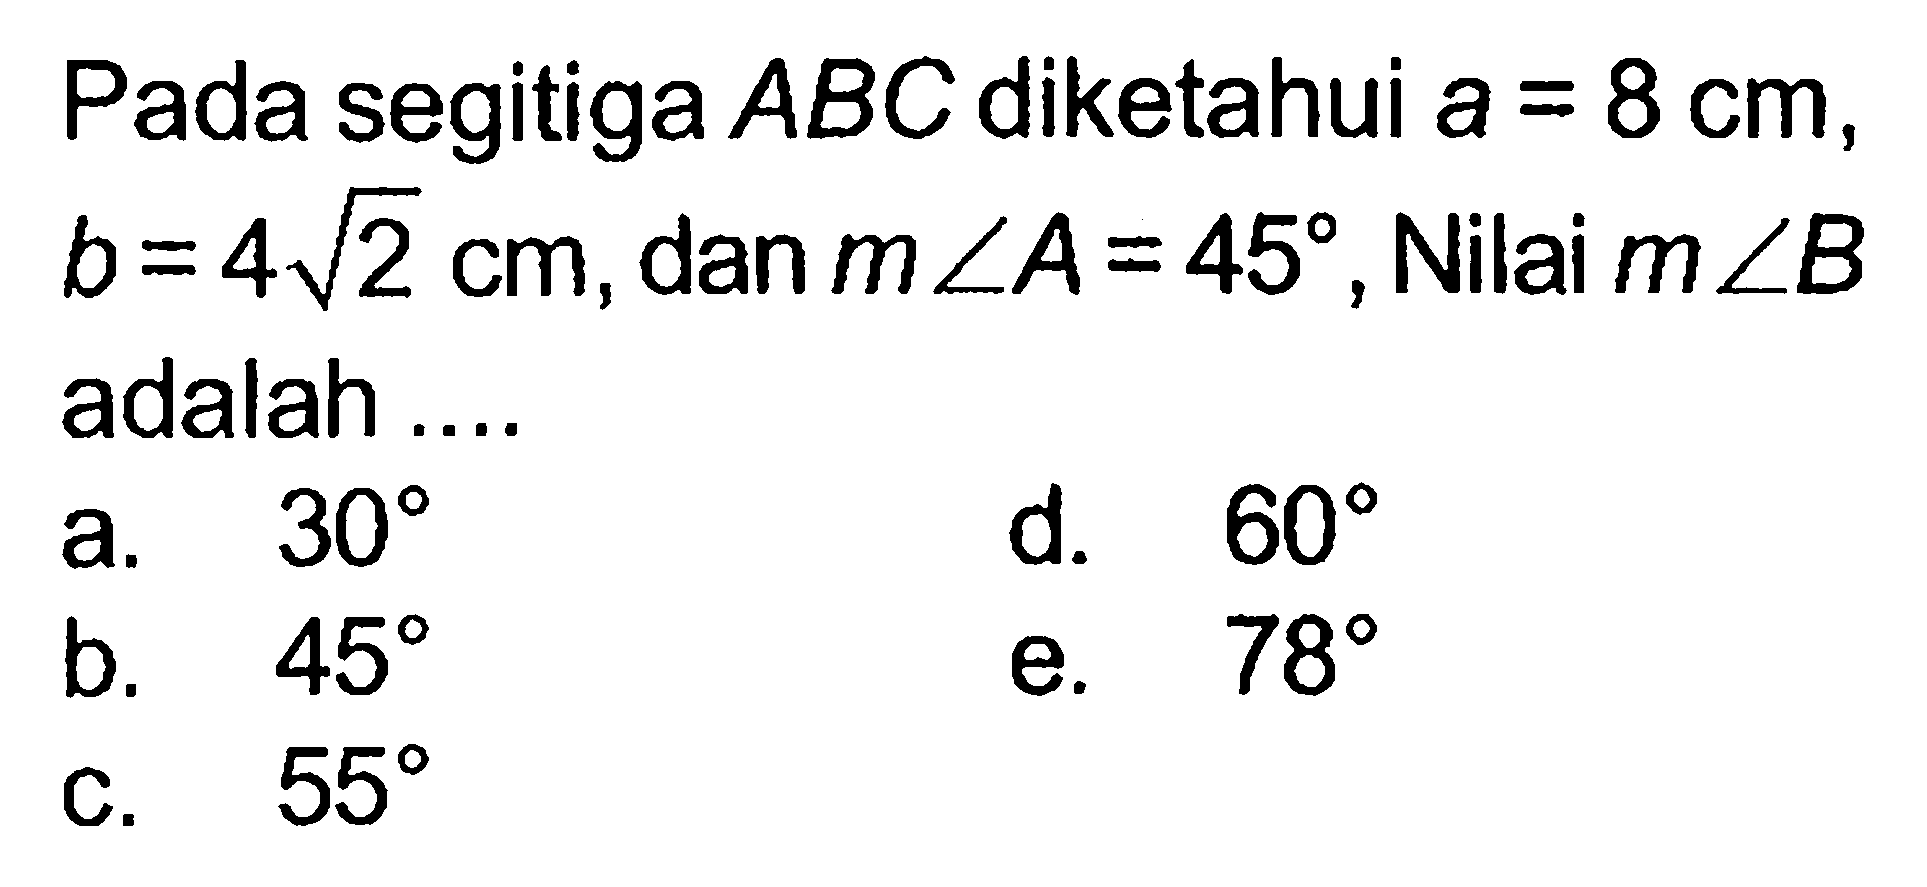 Pada segitiga ABC diketahui a=8 cm,  b=4 akar(2) cm, dan m sudut A=45, Nilai m sudut B adalah ....